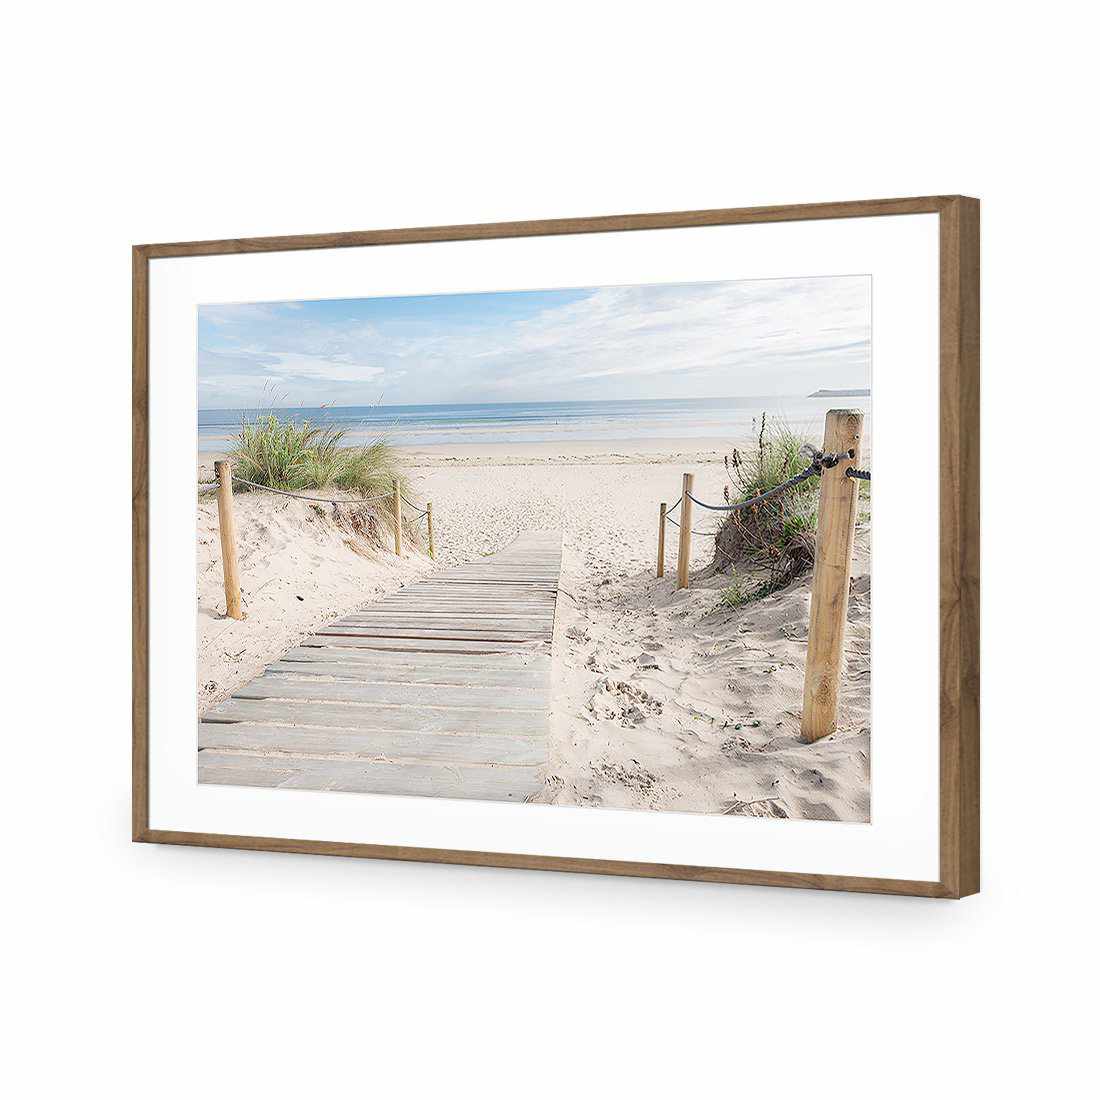 Beach Path-Acrylic-Wall Art Design-With Border-Acrylic - Natural Frame-45x30cm-Wall Art Designs